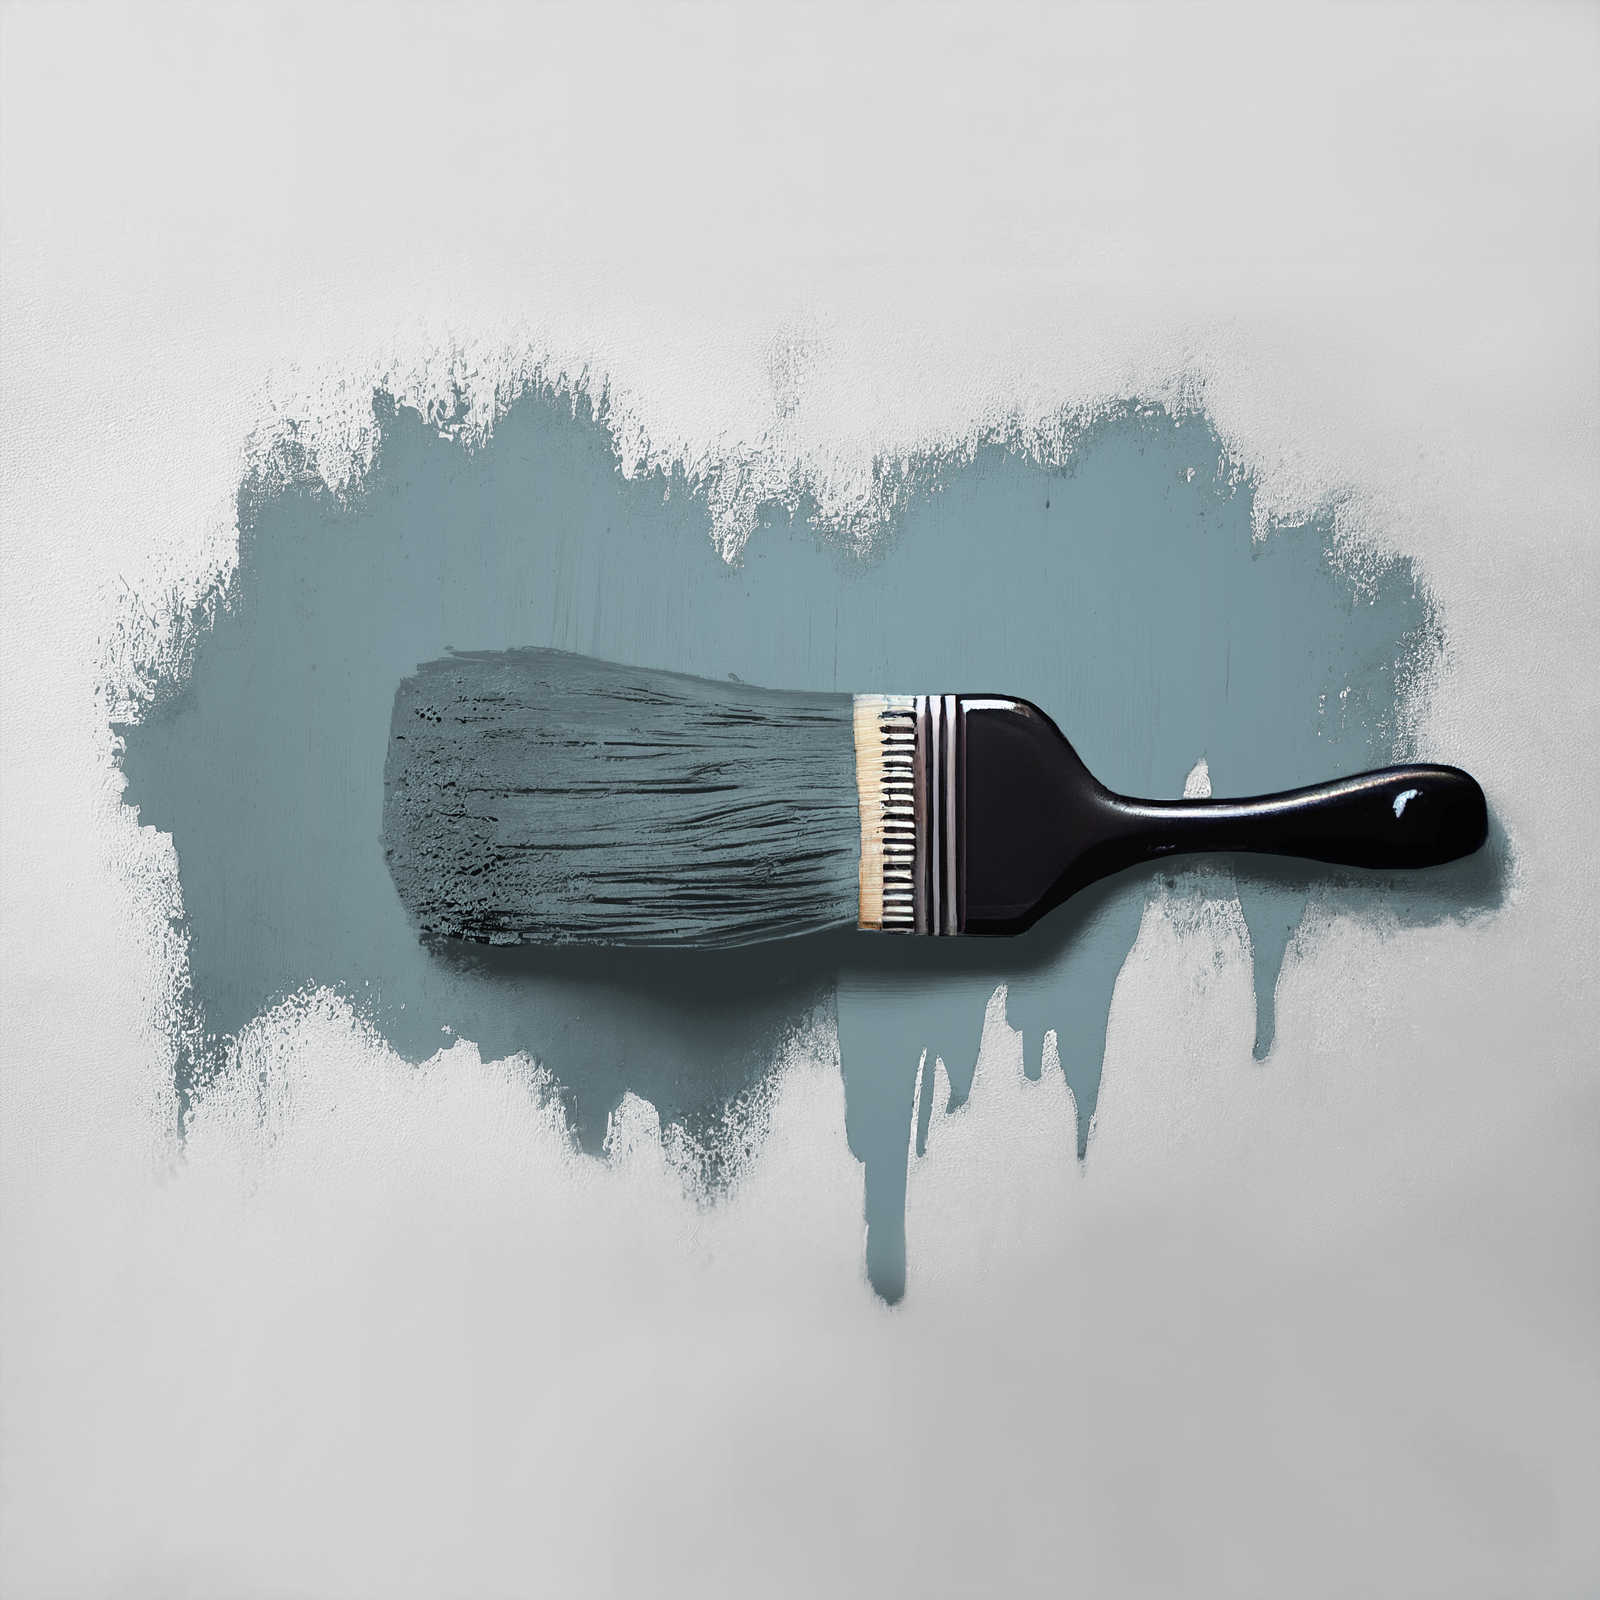             Peinture murale TCK3010 »Typical Trout« en gris bleu clair – 2,5 litres
        